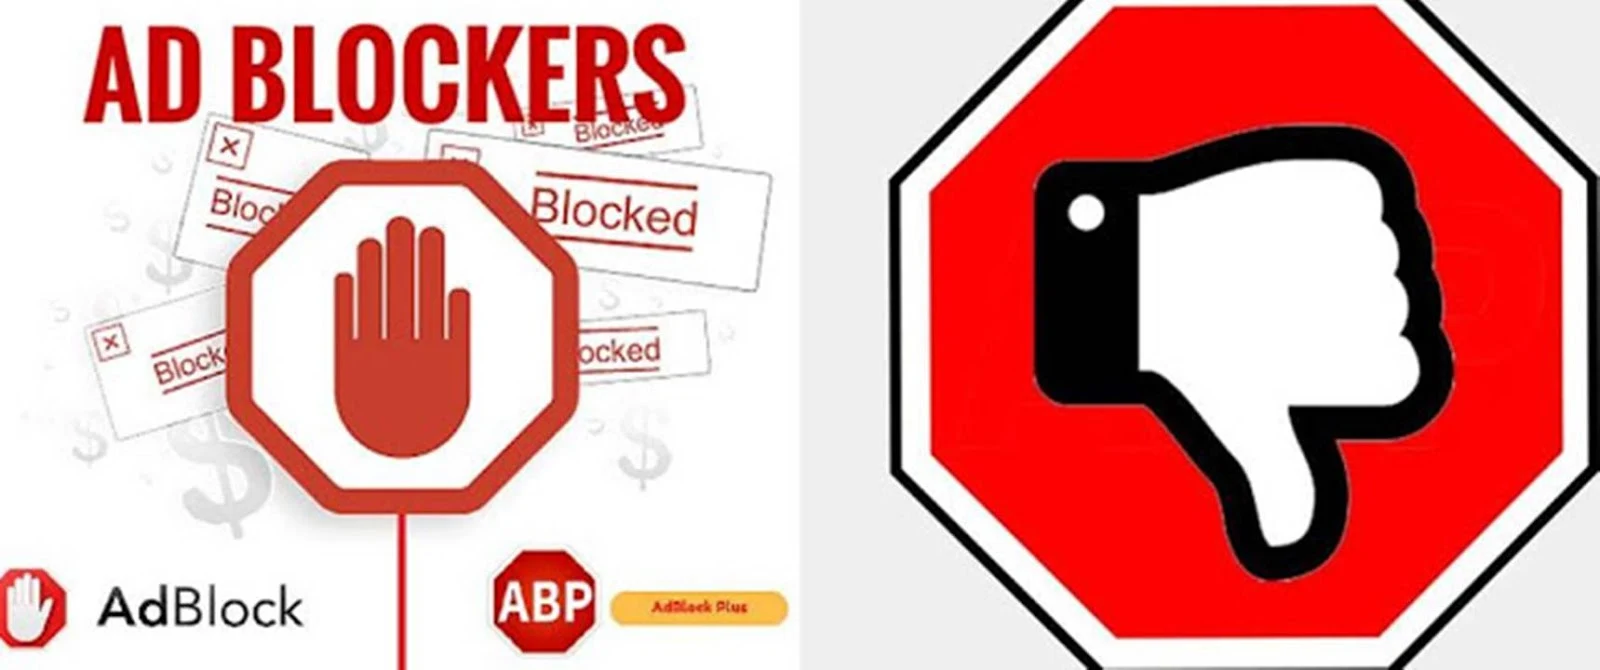 Block AdBlockers on blogger blogspot